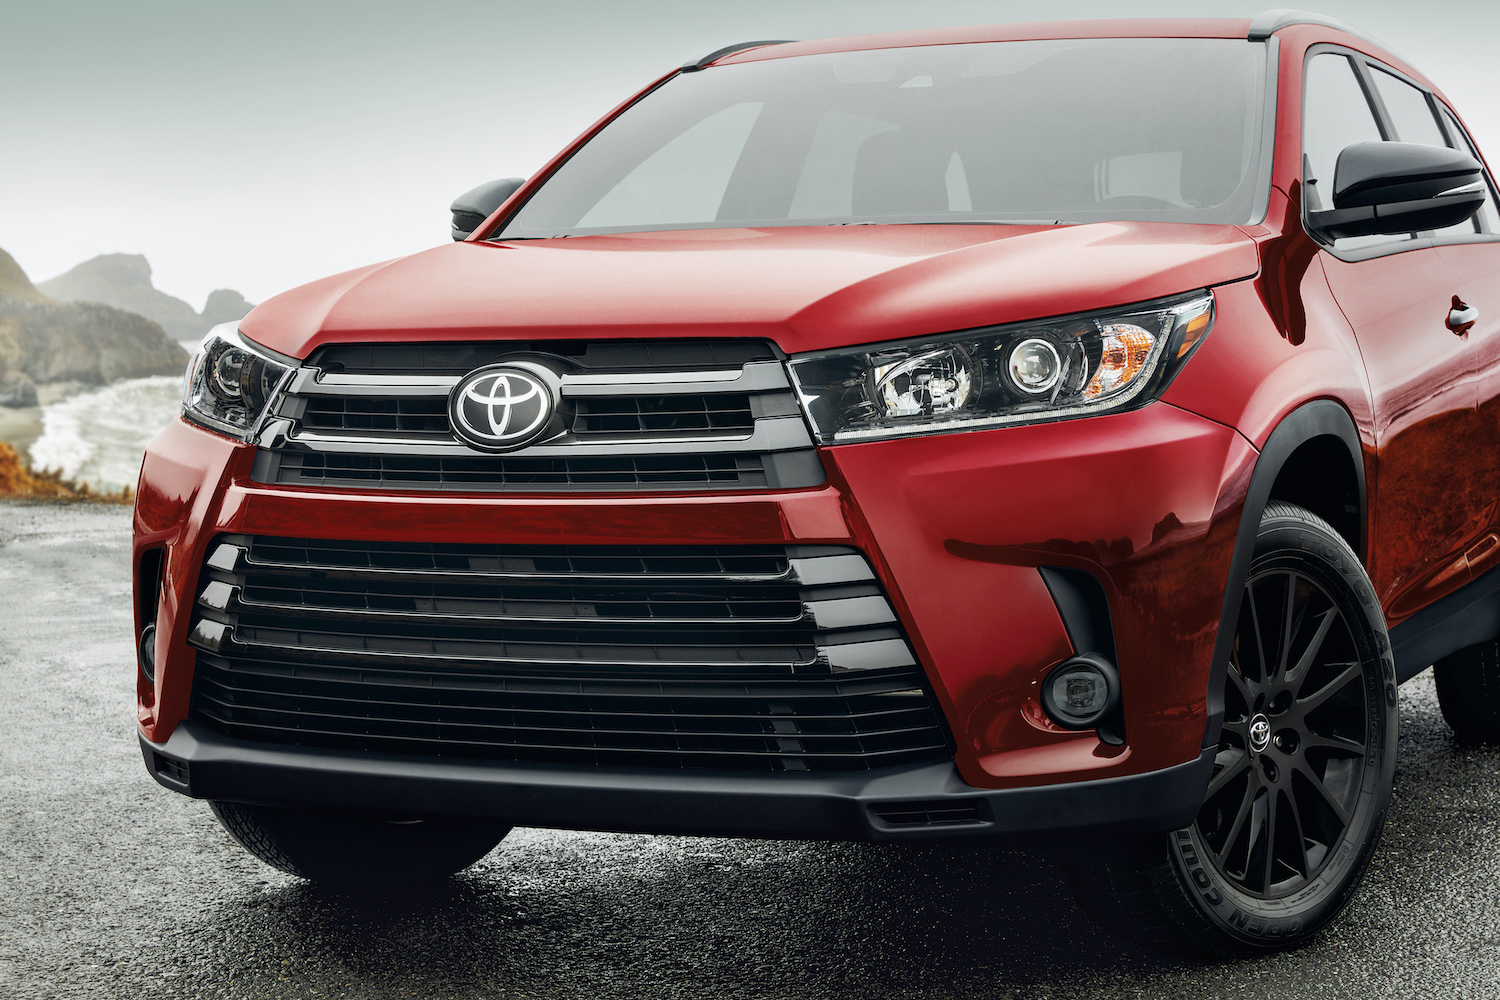 Toyota Highlander 2015 года — отличный 3-рядный внедорожник менее чем за 20 000 долларов